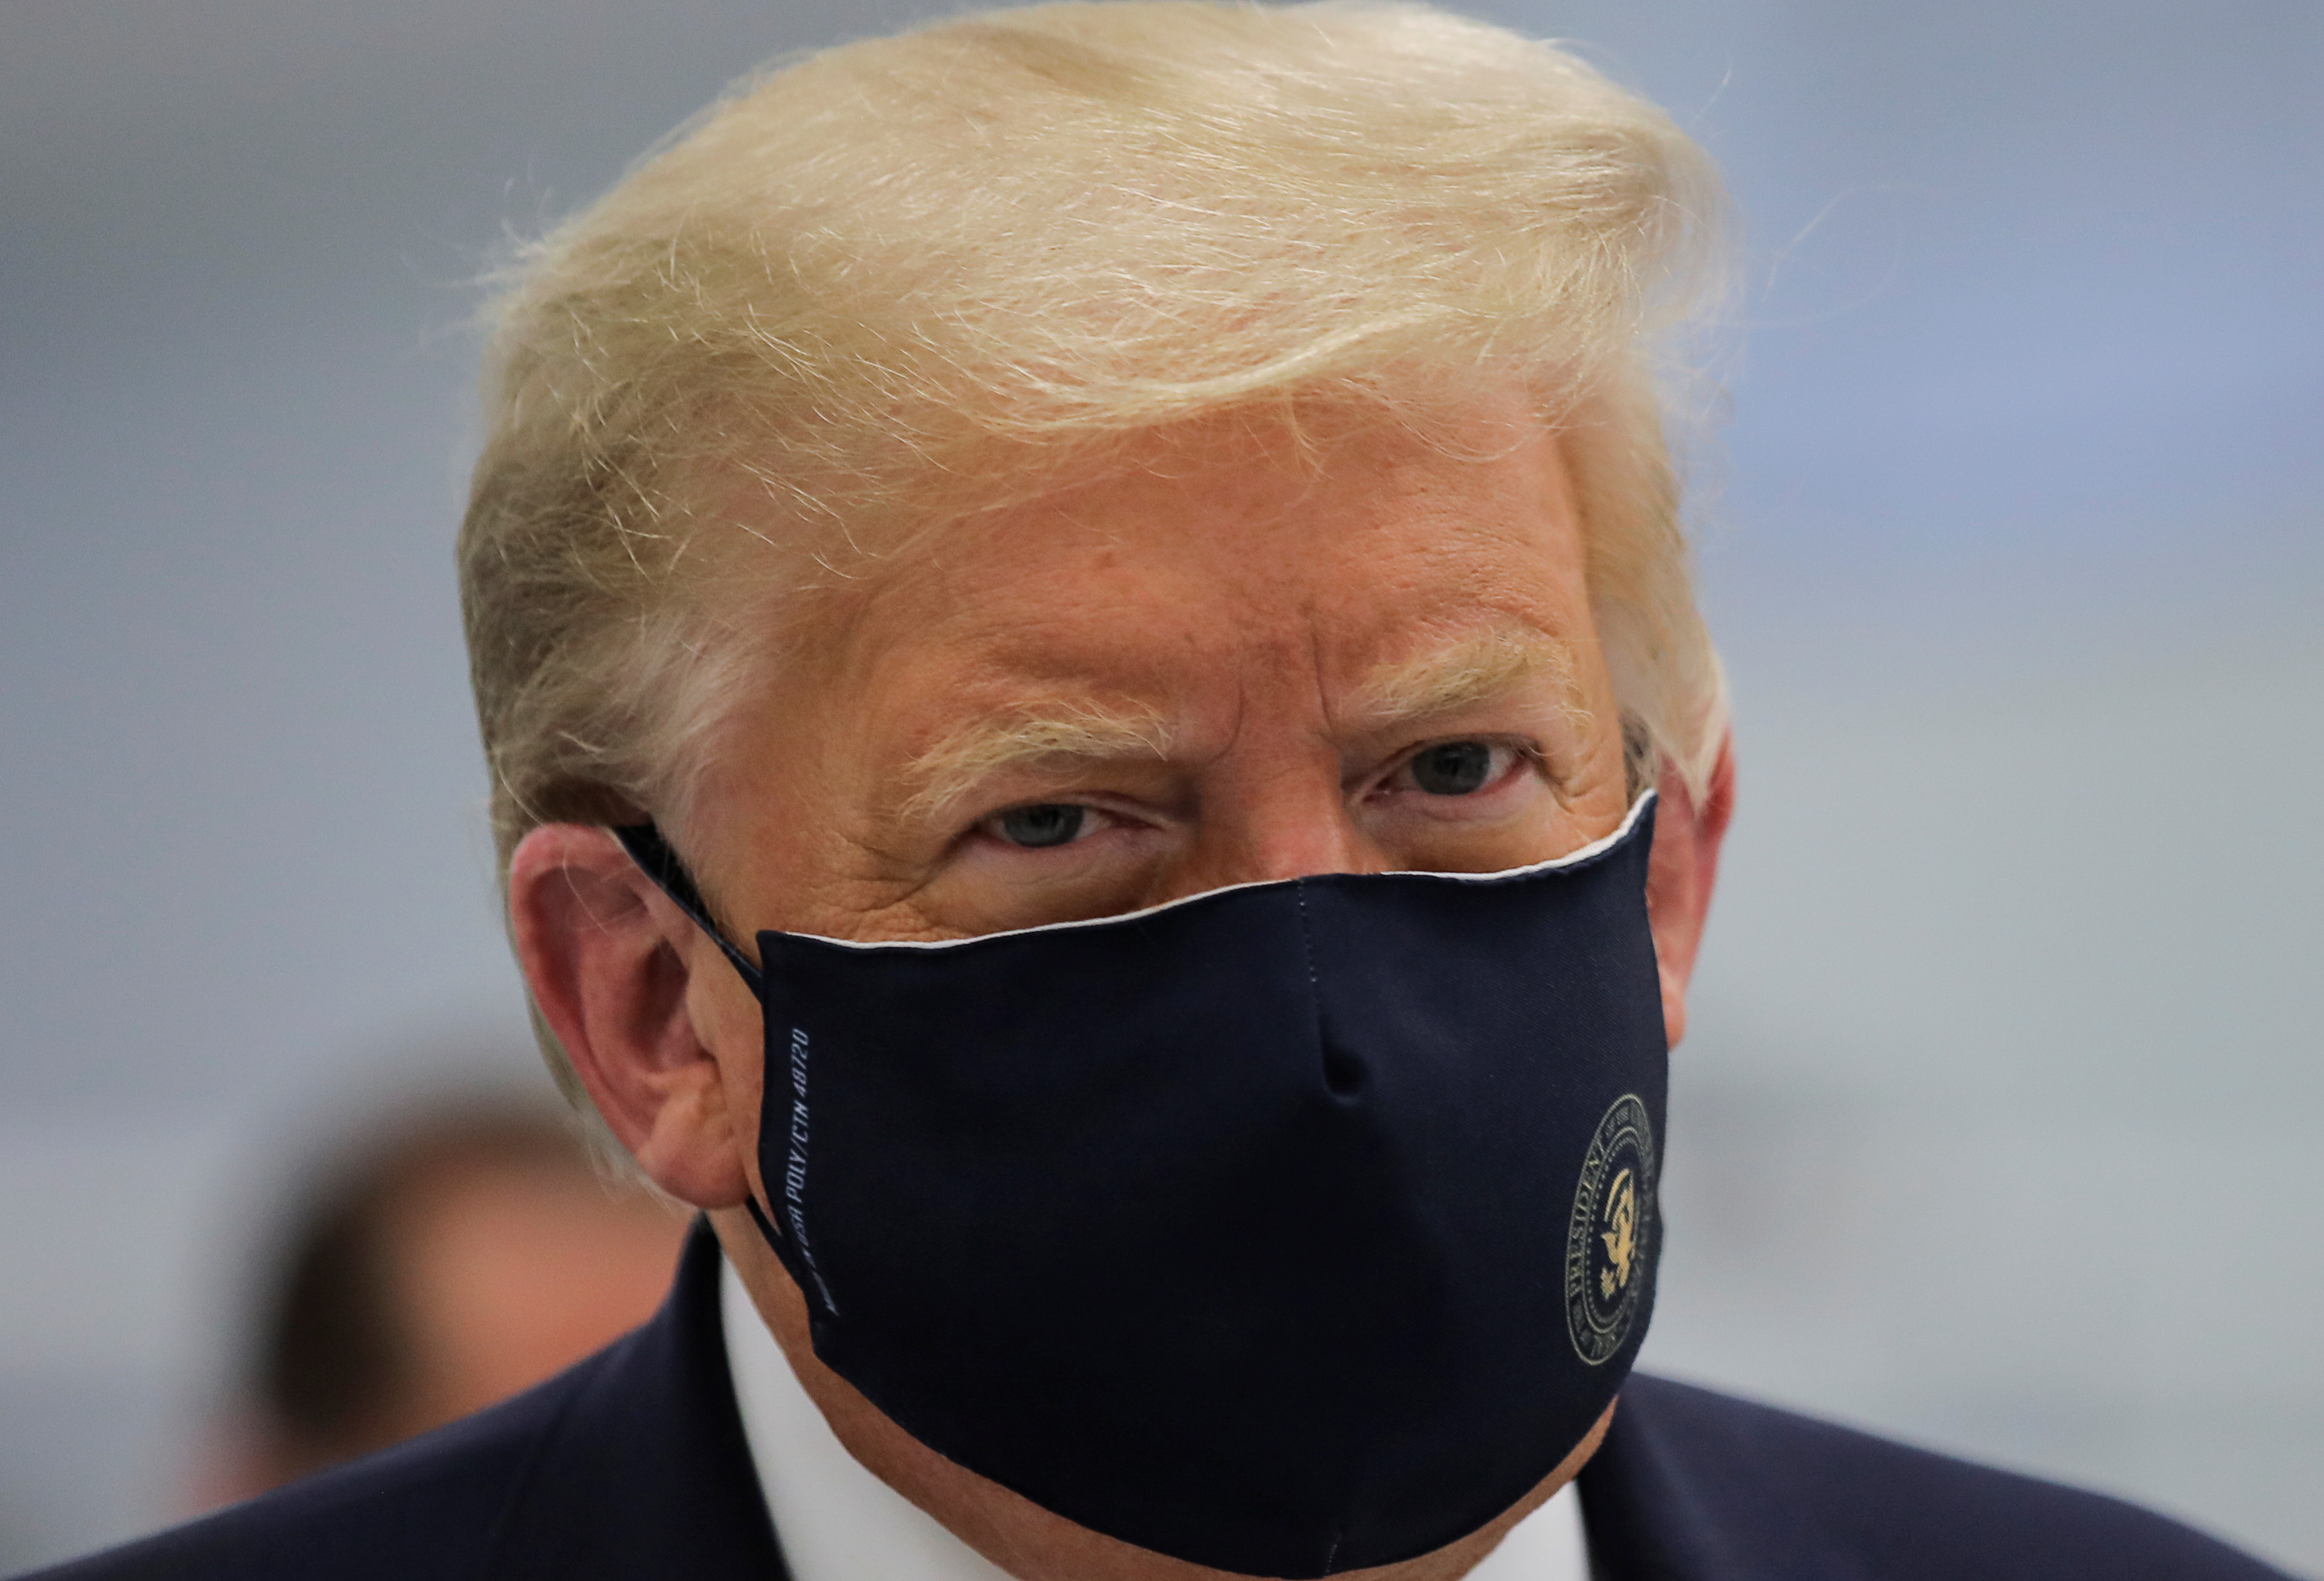 “Permanece sin fiebre y sin oxígeno suplementario”: Nuevo parte médico de Trump (Documento)